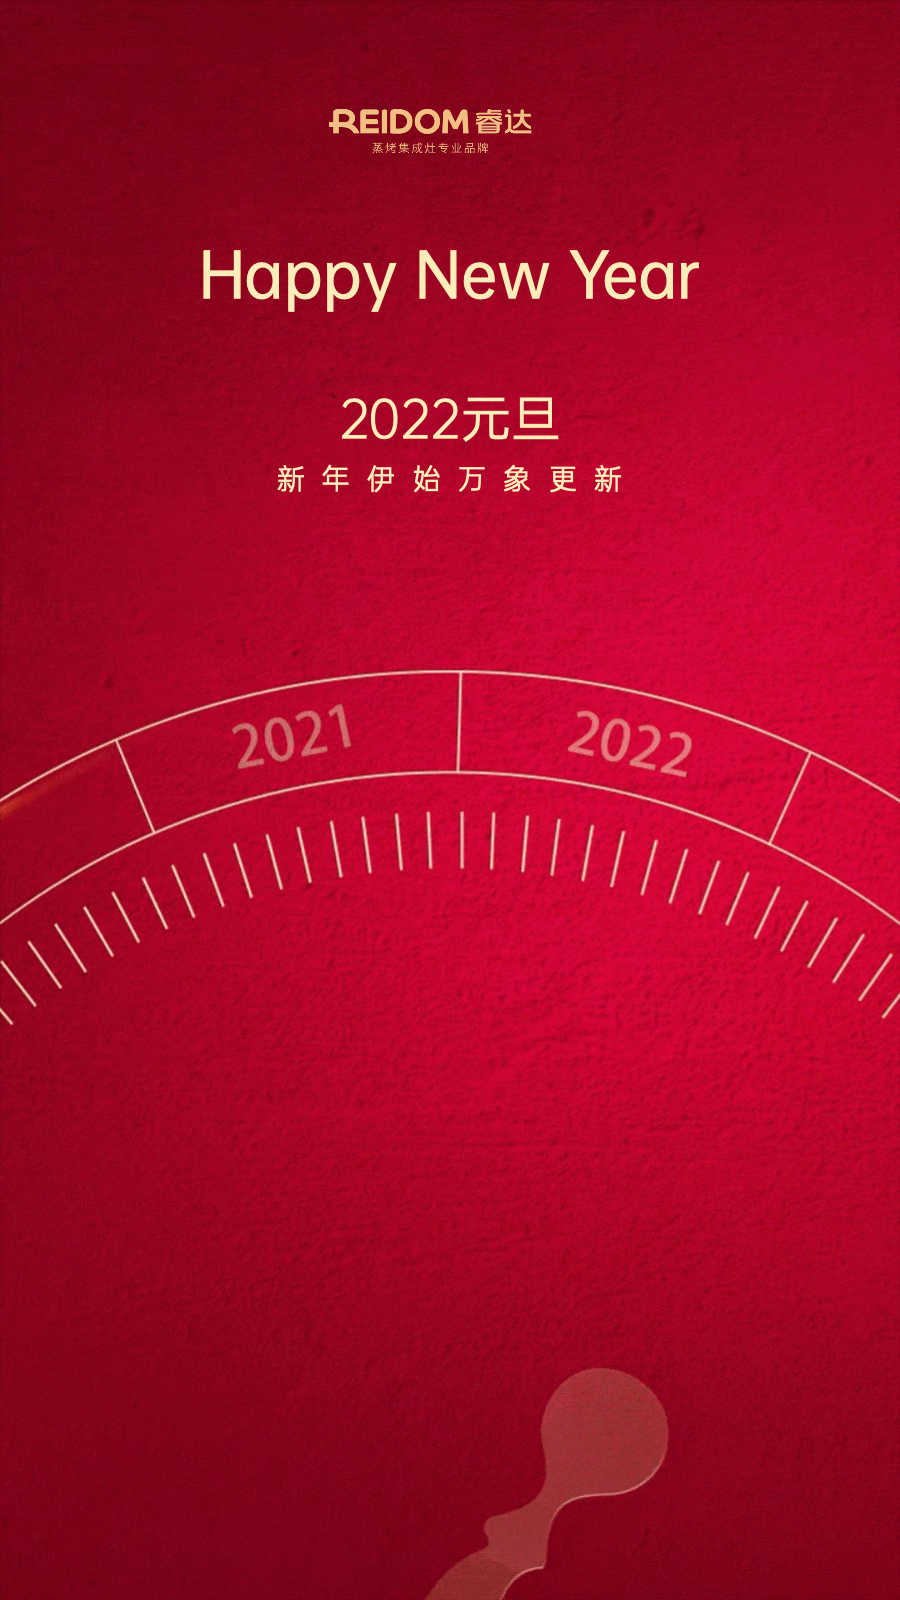 睿达集成灶：回顾2021高光时刻 迎接2022全新挑战